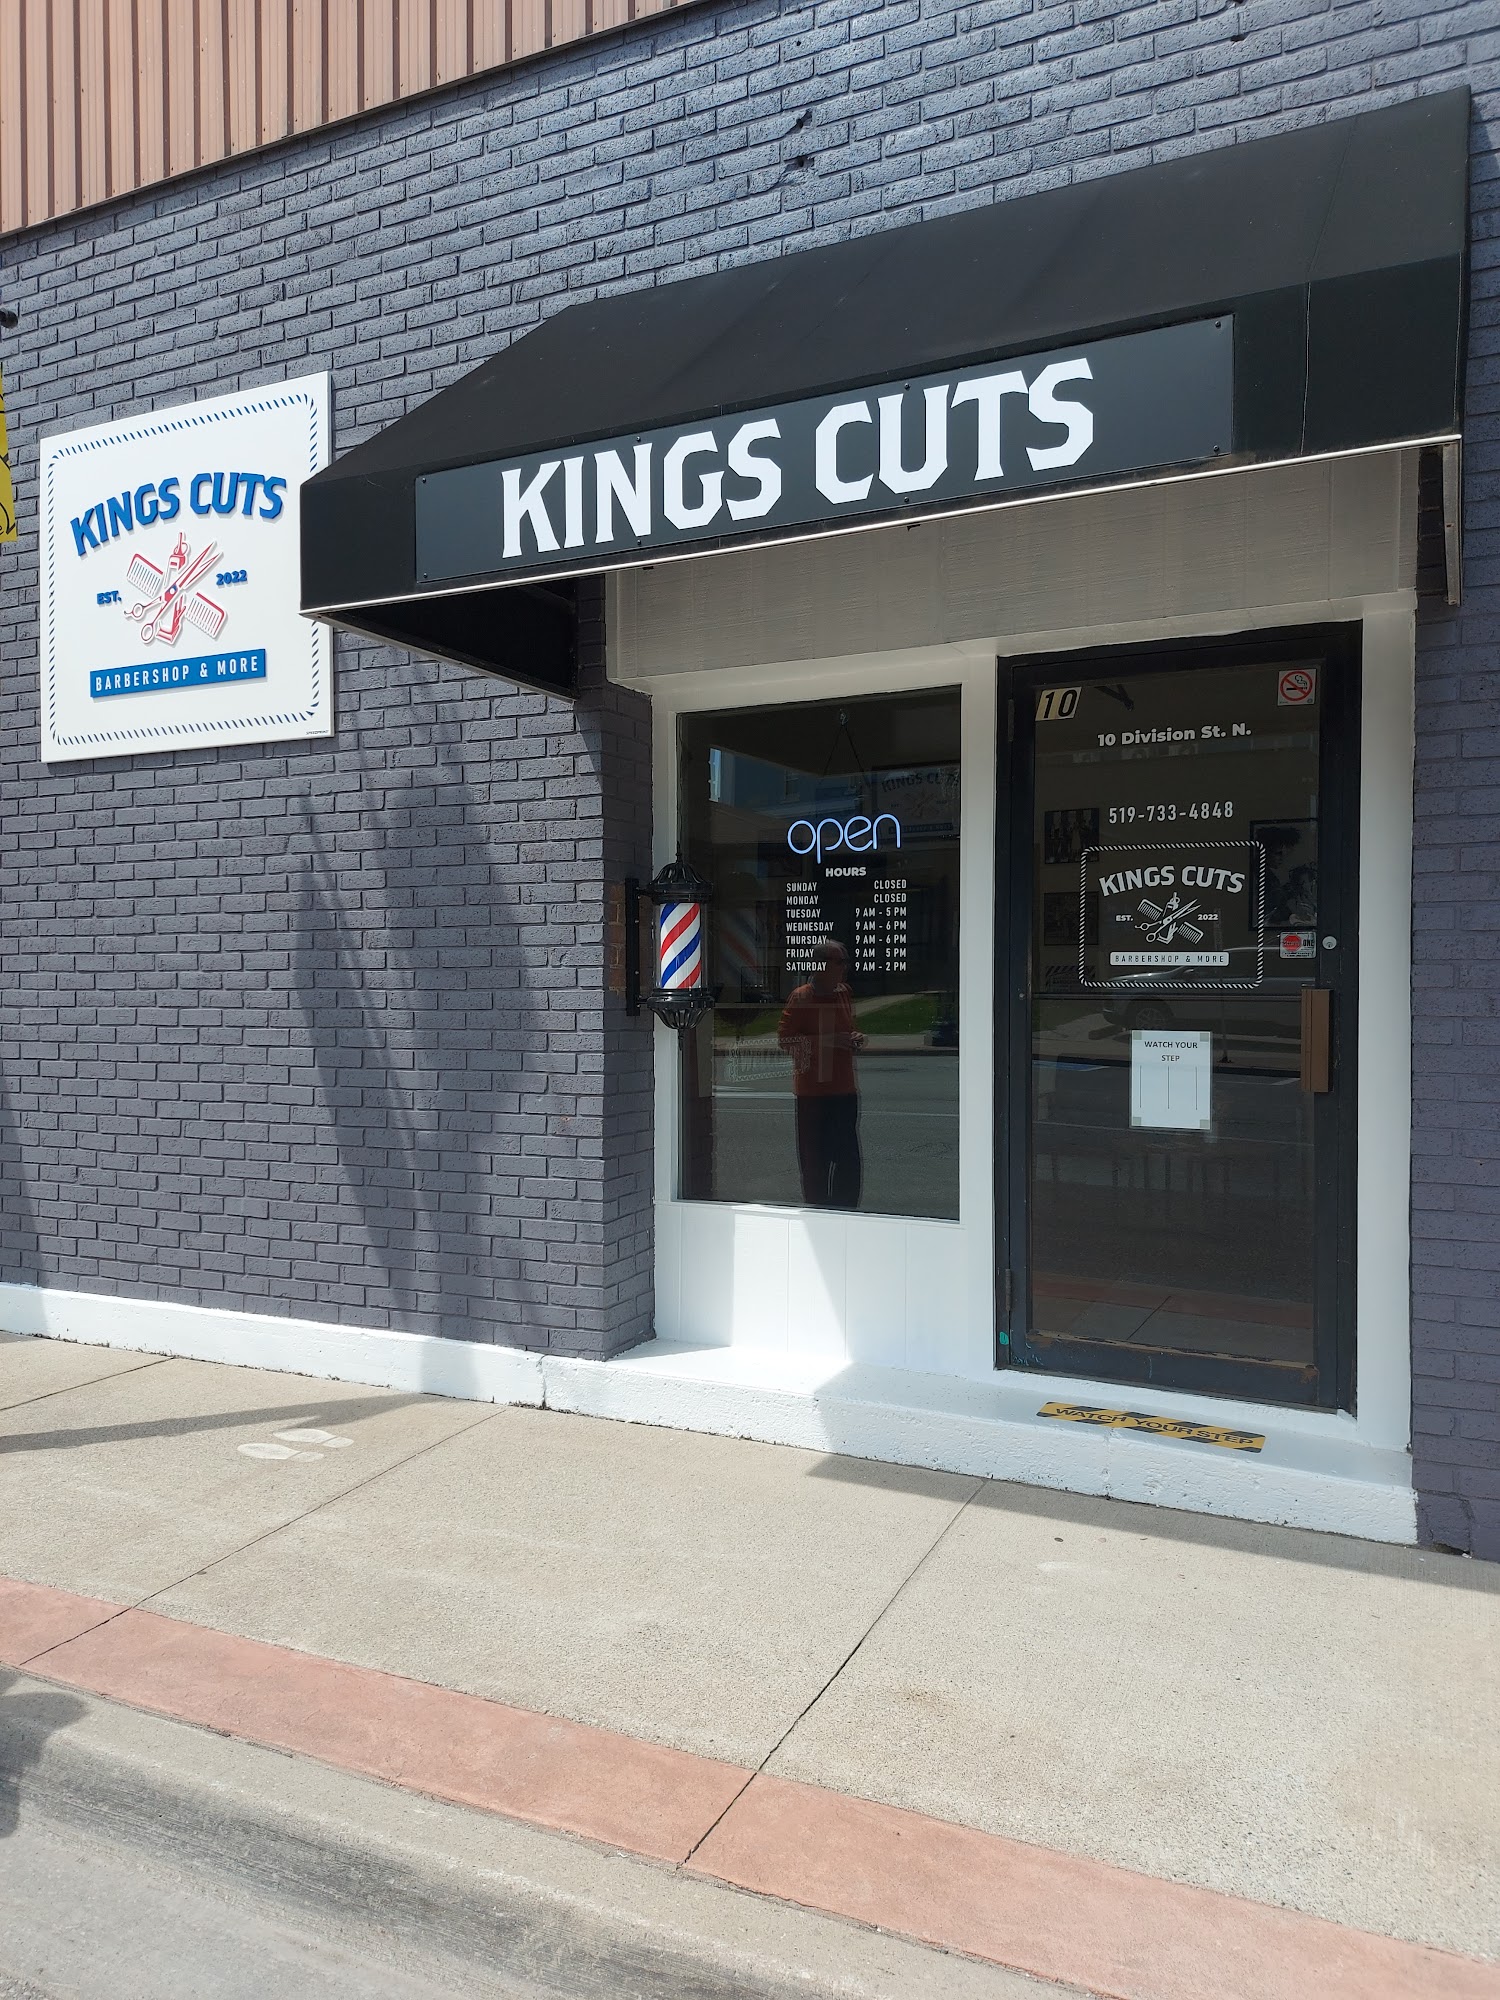 KINGS CUTS Barbershop & More 10 Division St N, Kingsville Ontario N9Y 1C8